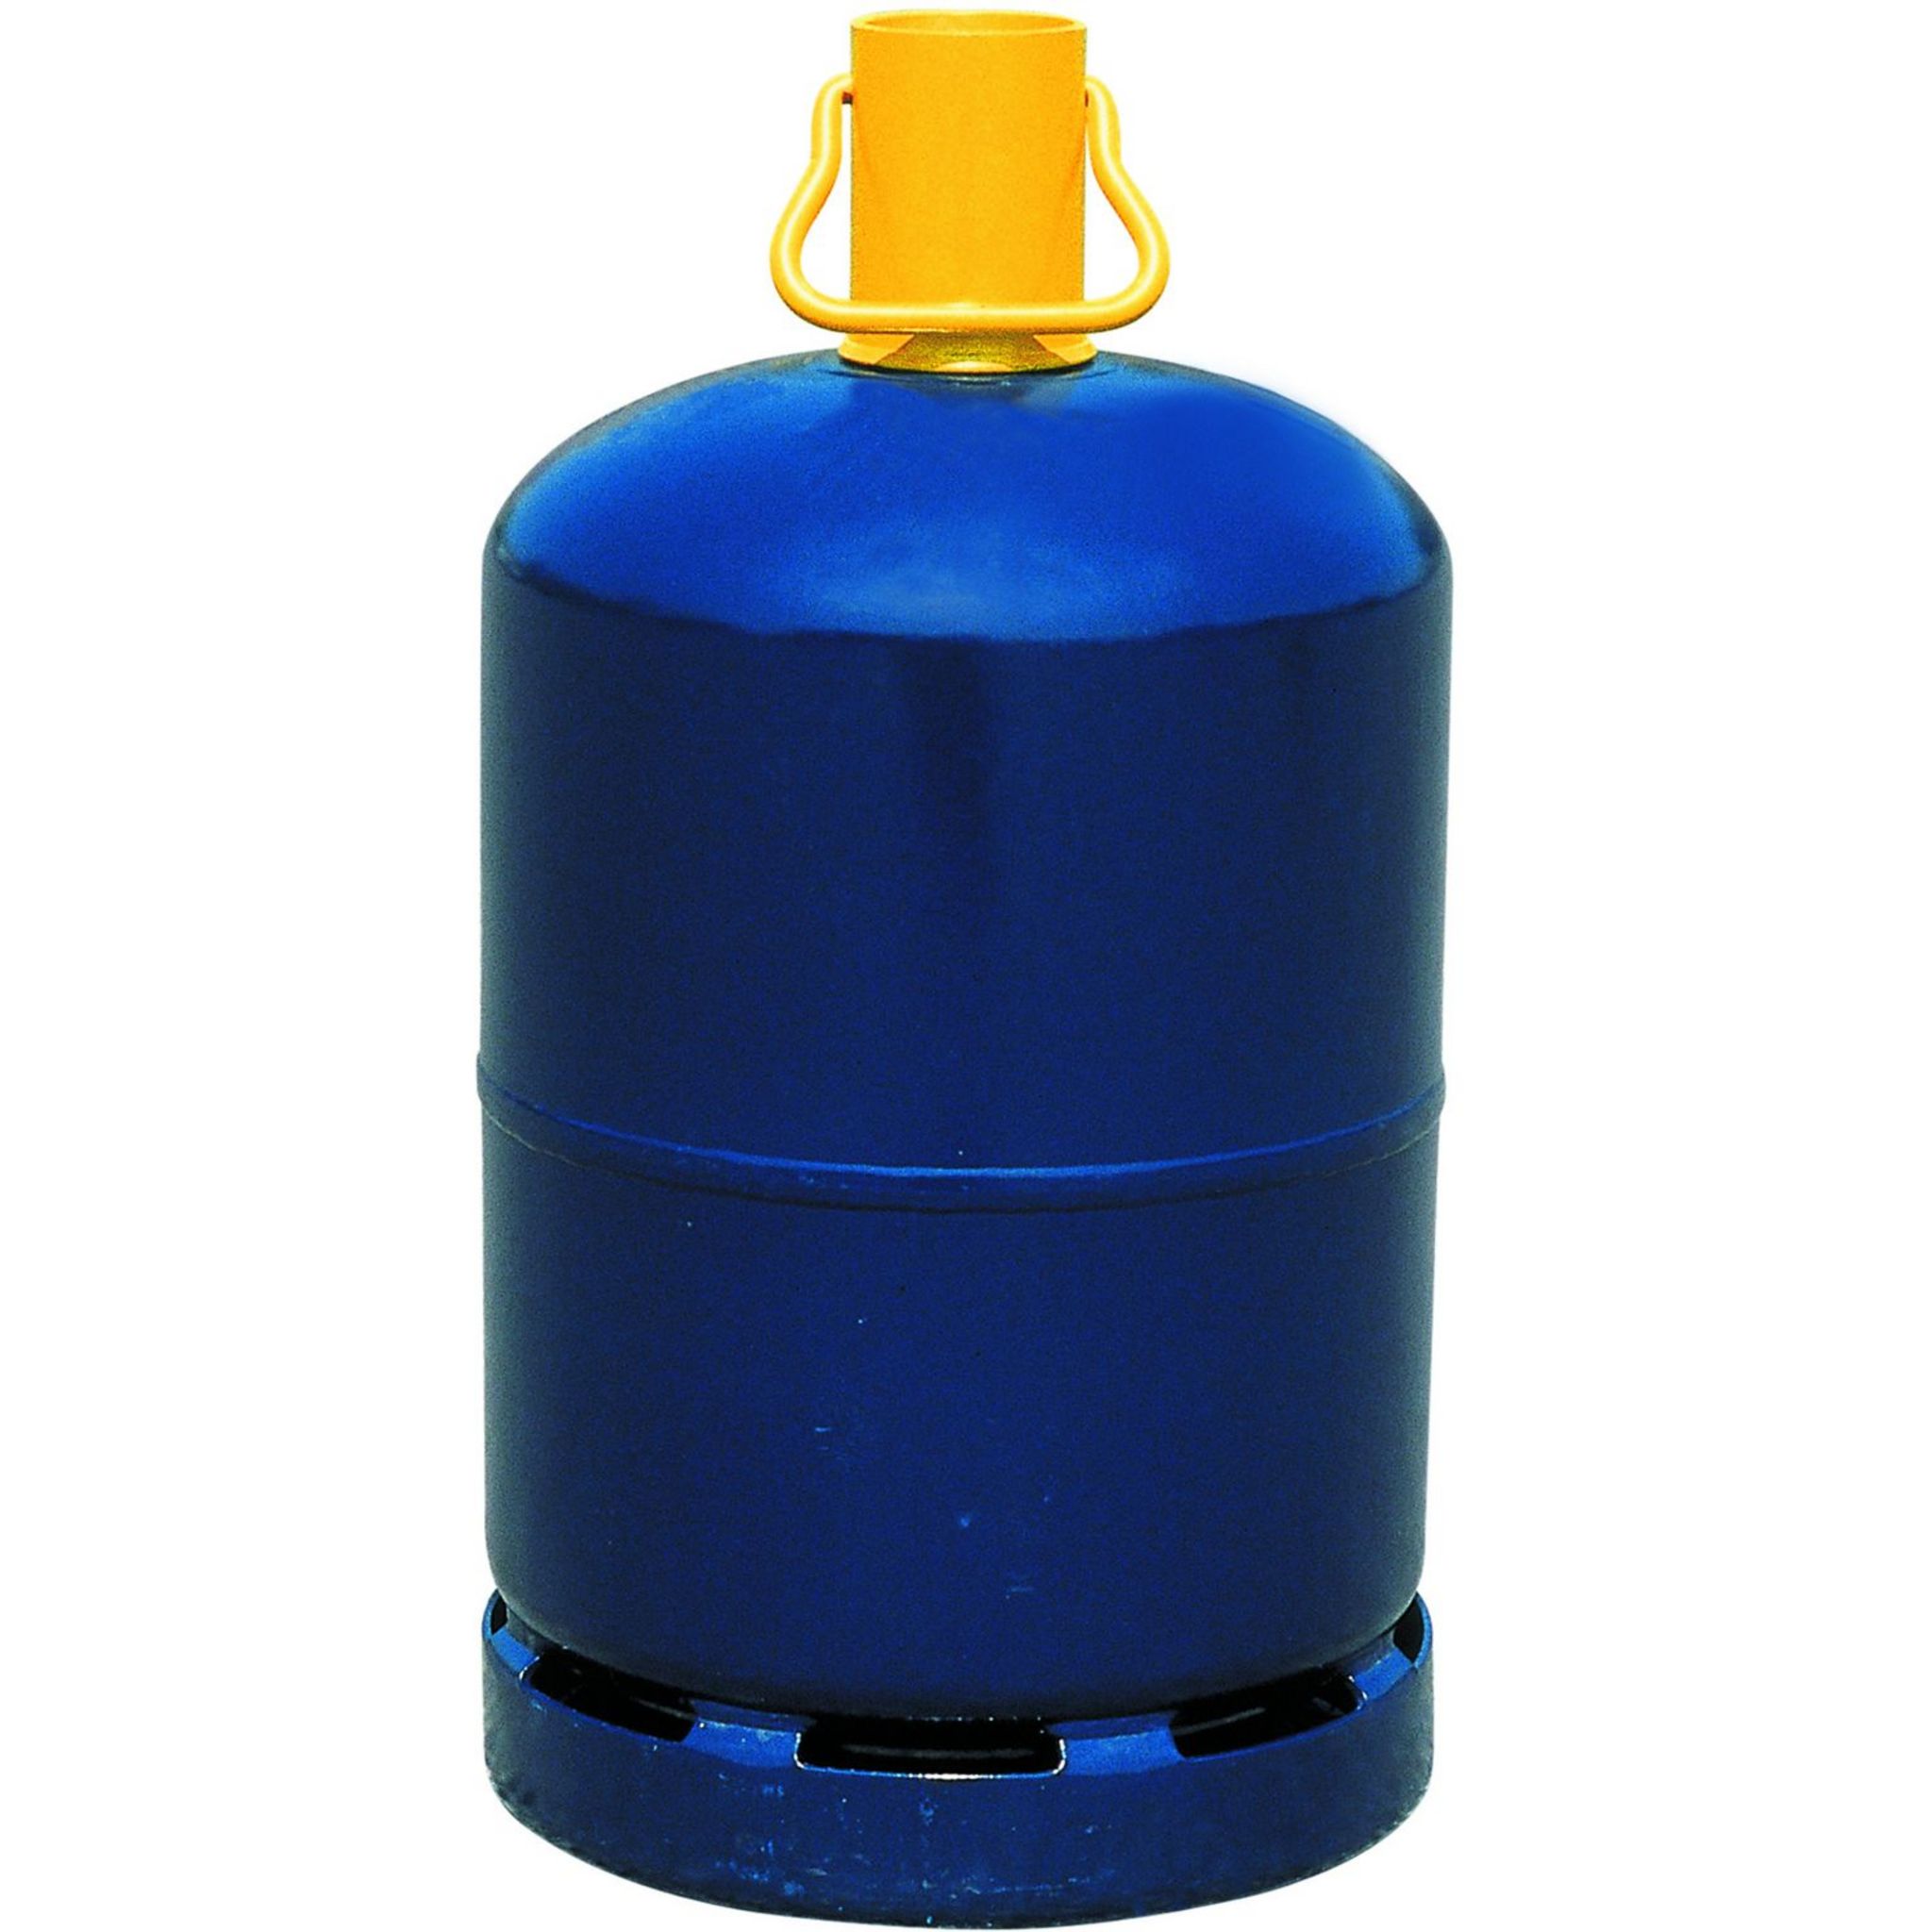 Comment reconnaître une bouteille de gaz propane ou butane ?